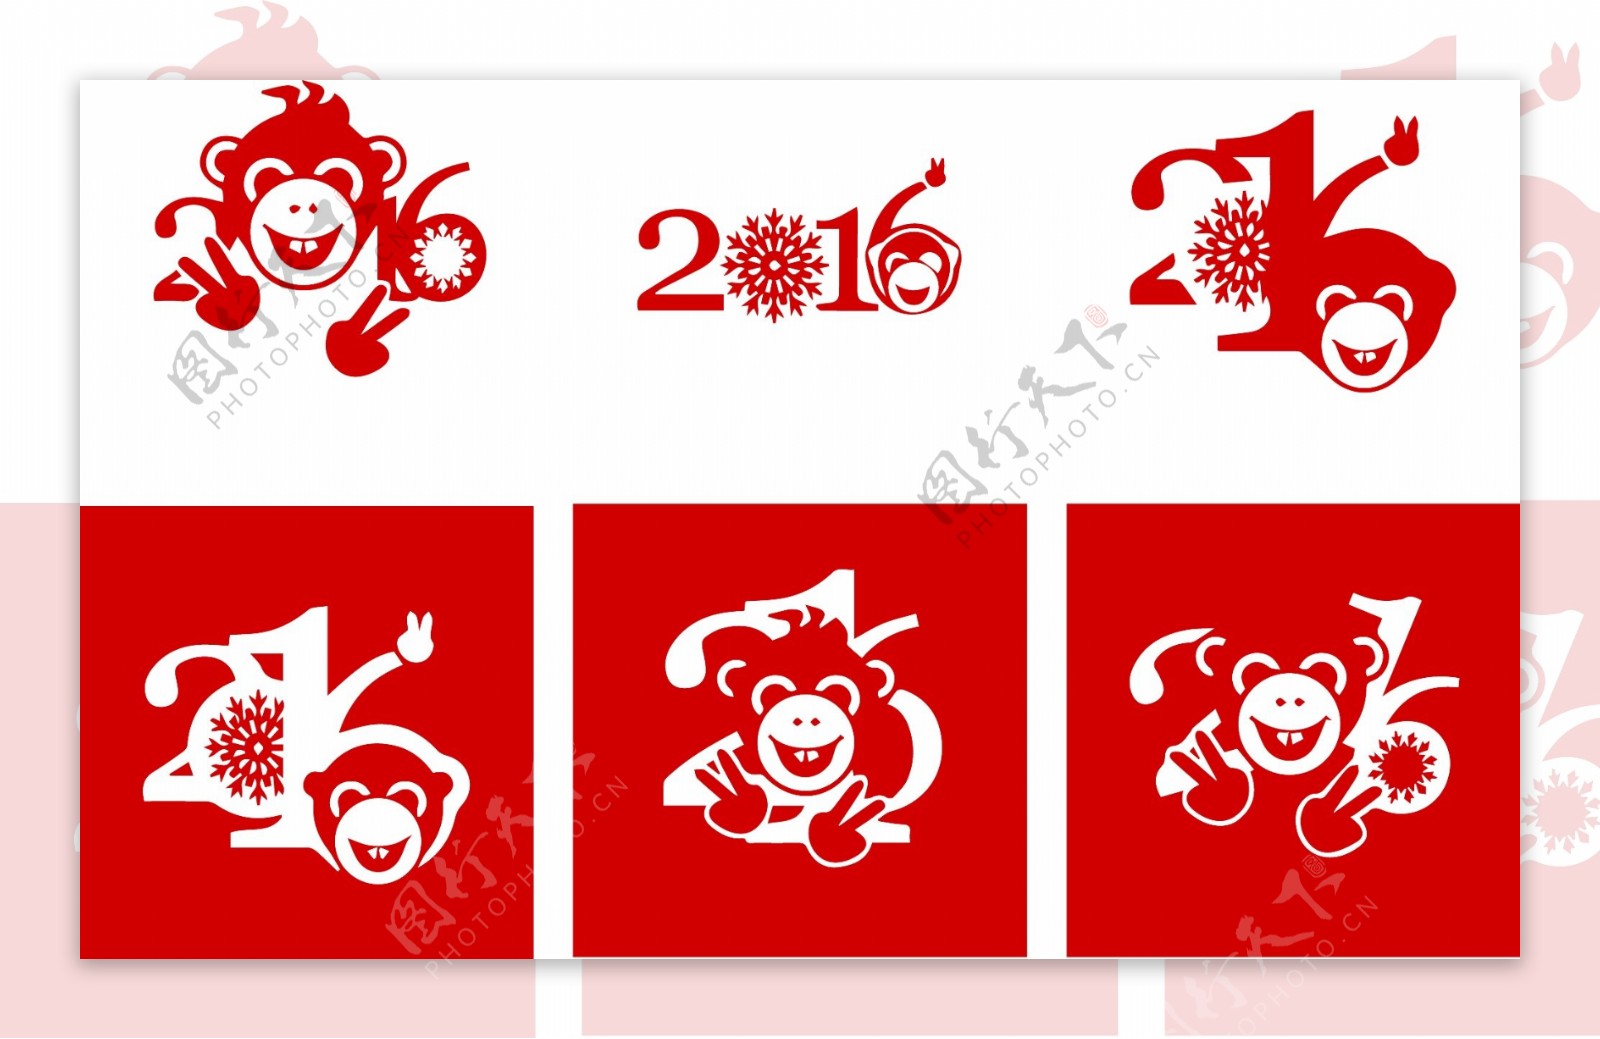 猴子头像2016字体设计